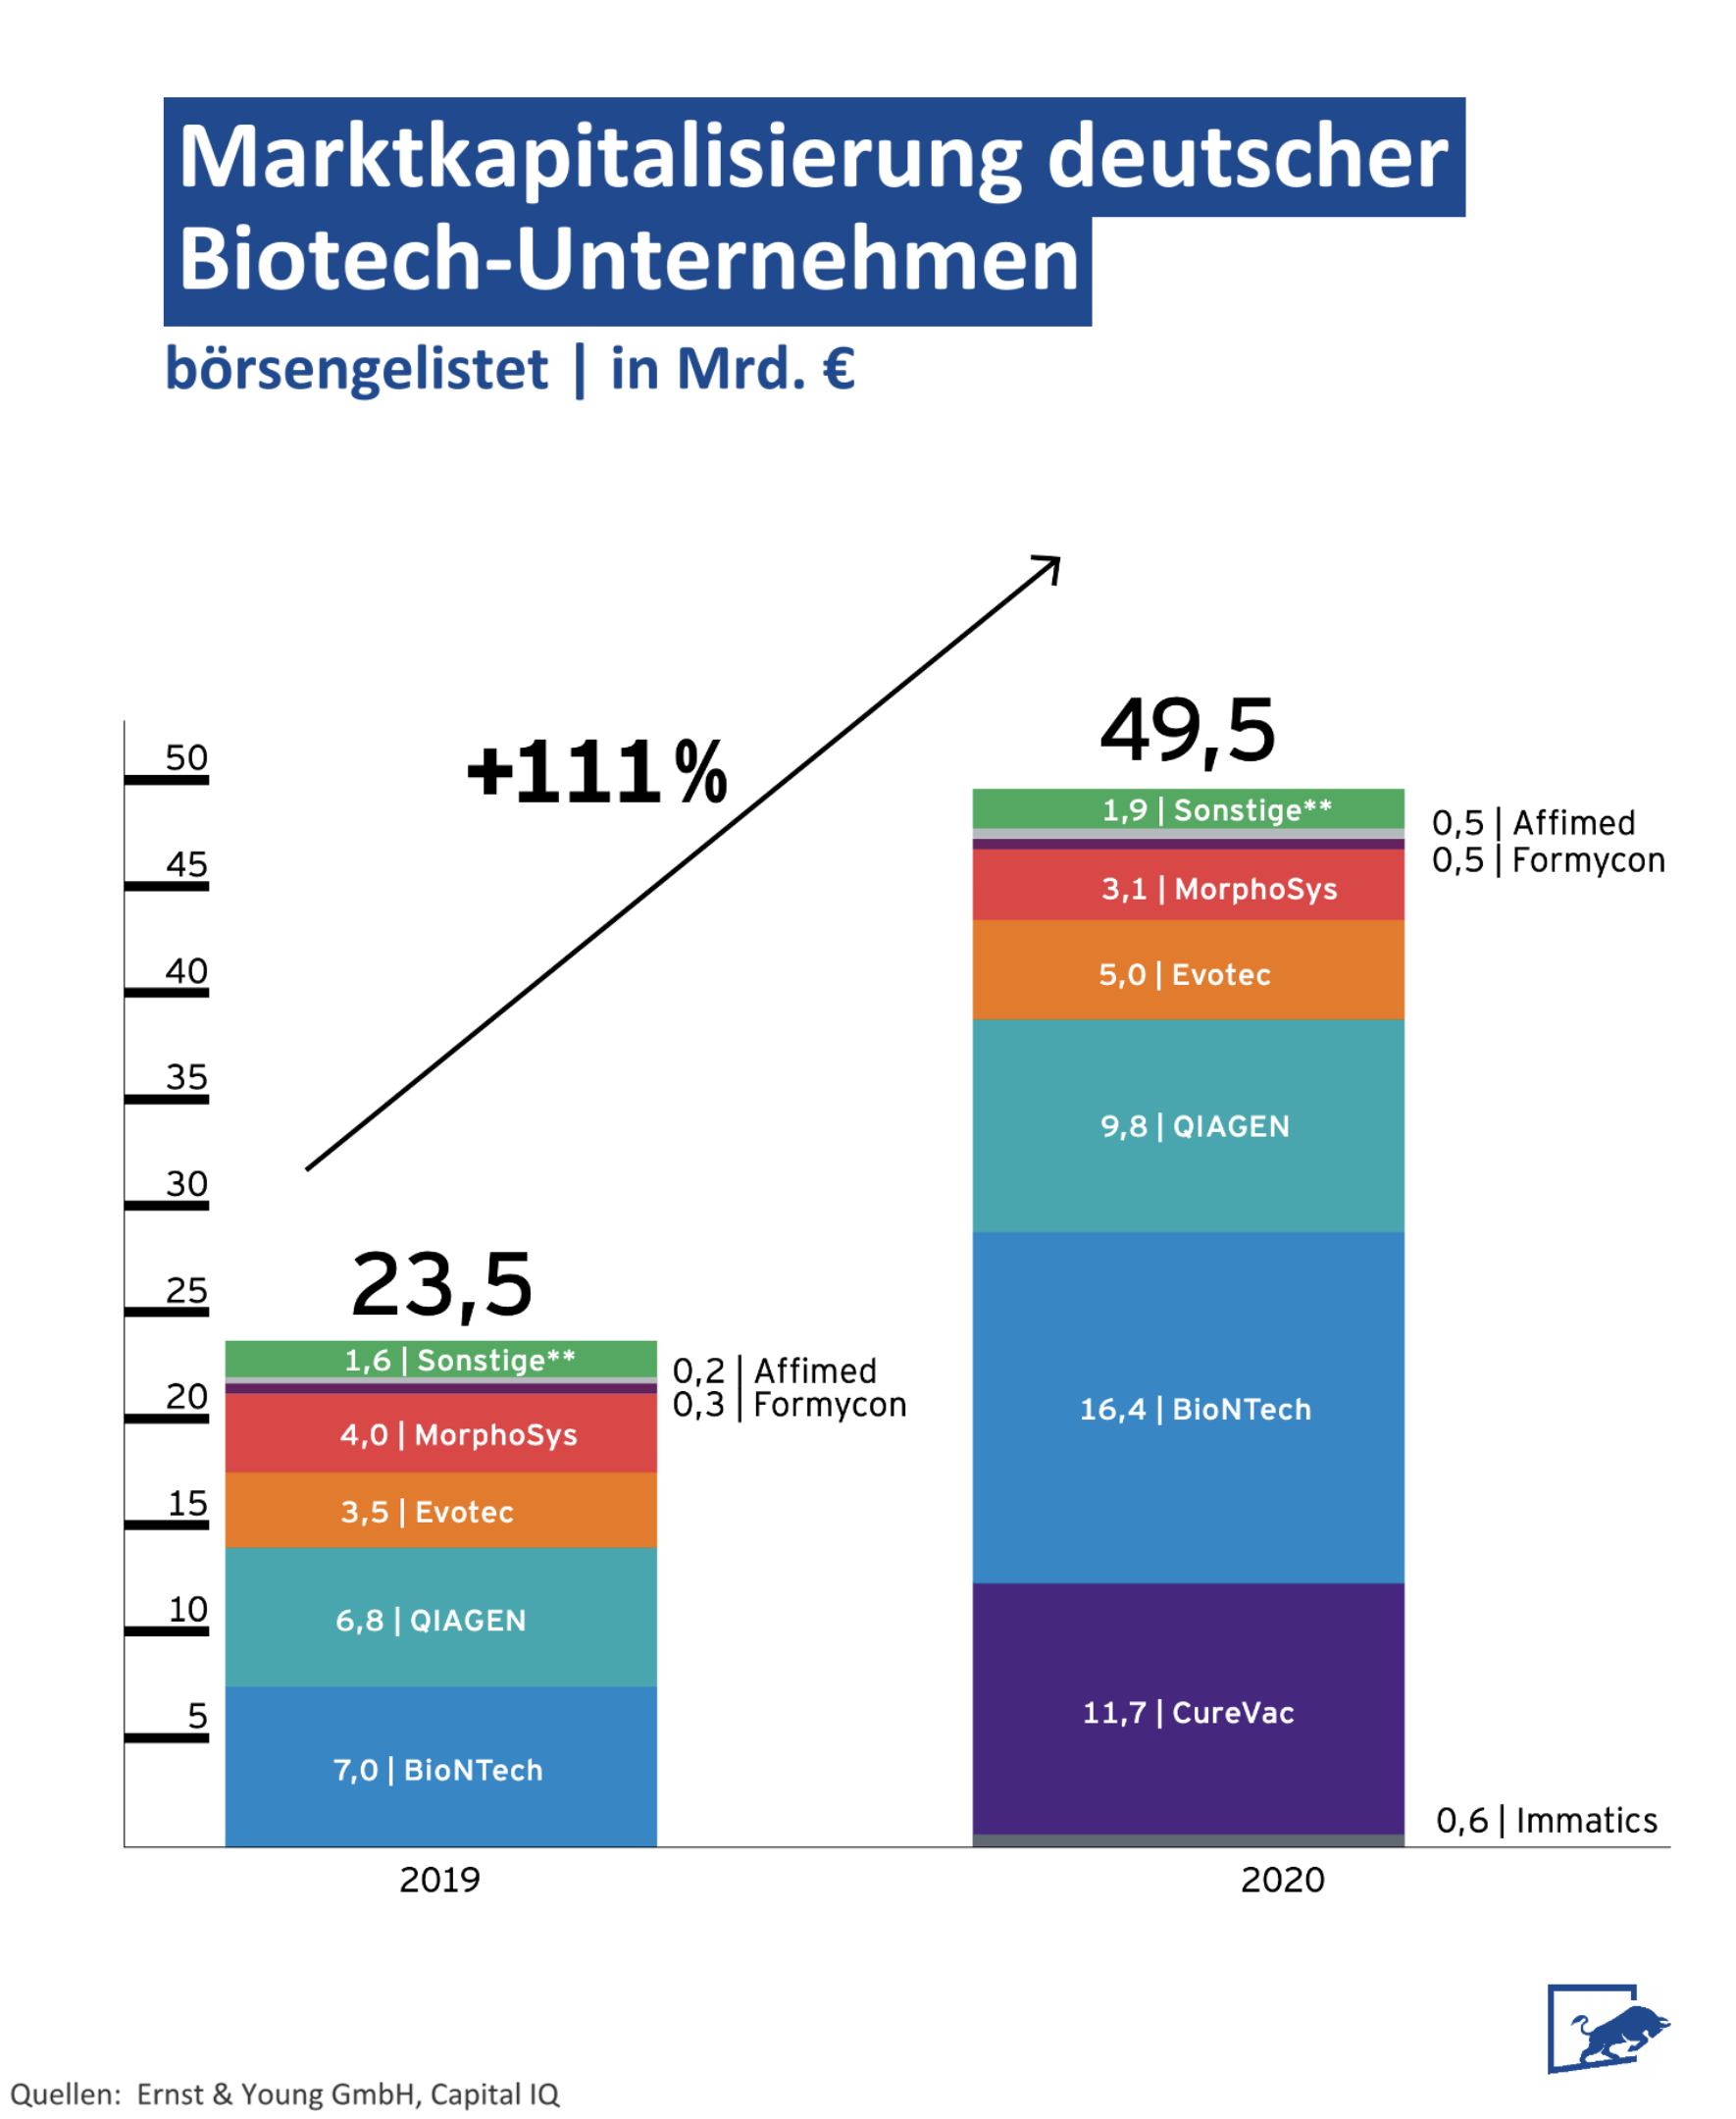 Marktkapitalisierung börsengelisteter, deutscher Biotech-Unternehmen wie BioNTech, QIAGEN, Evotec, MorphoSys